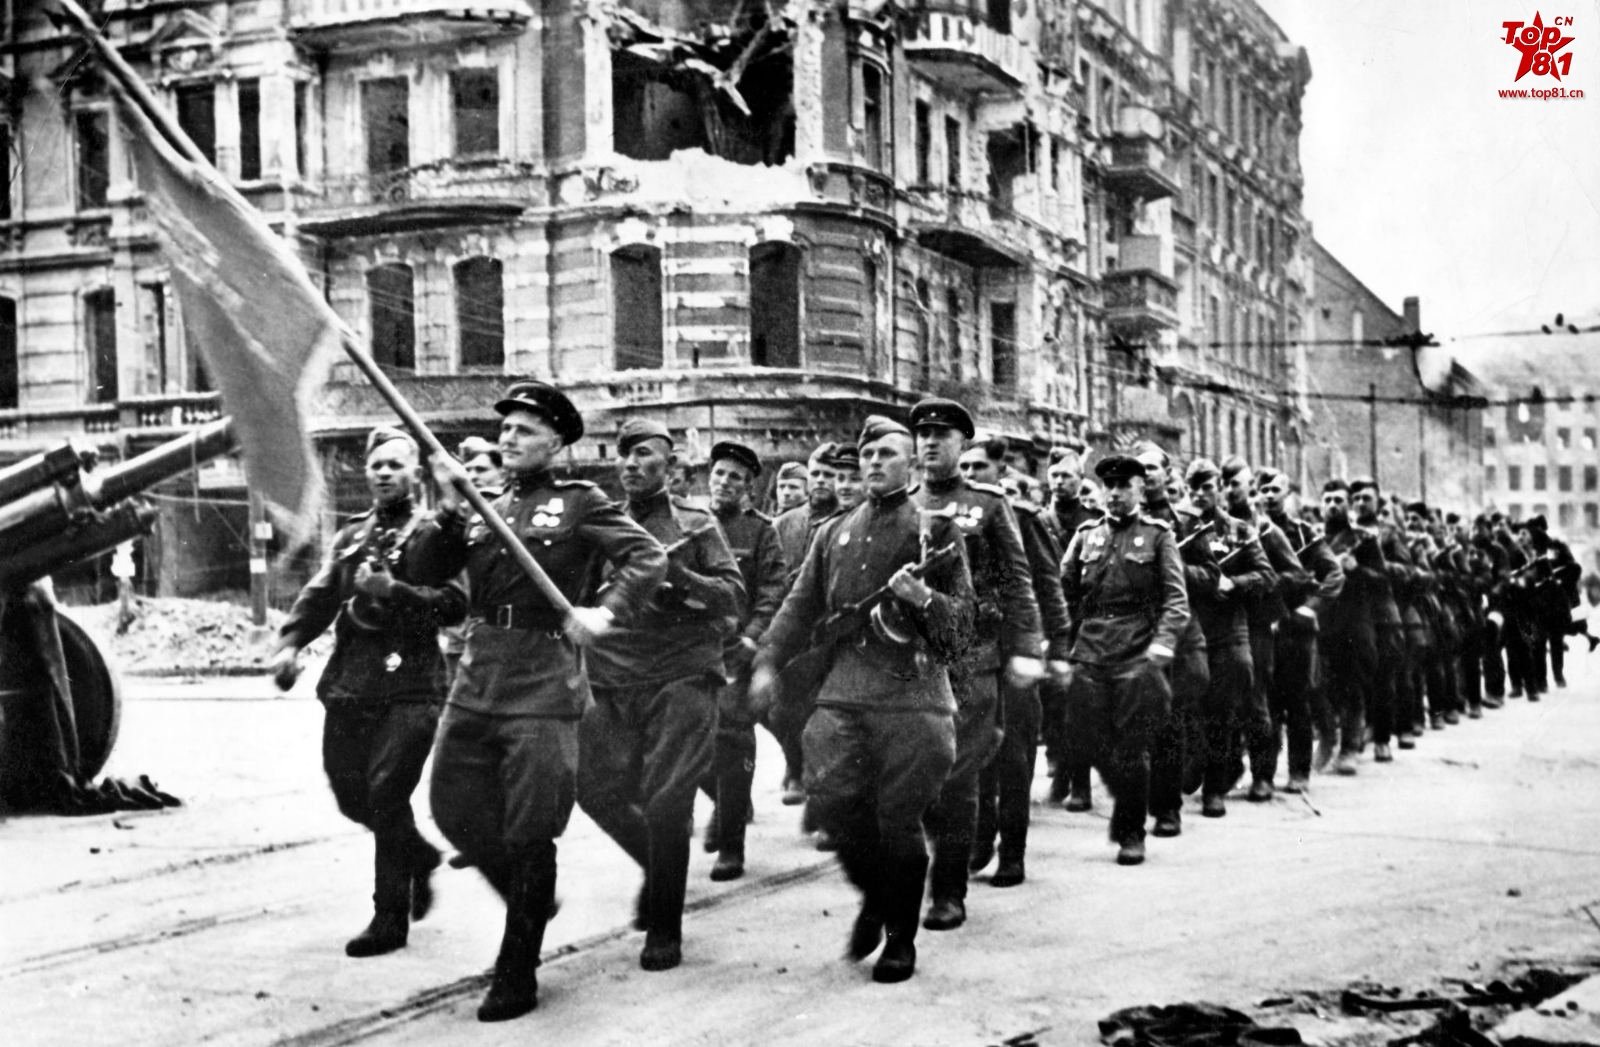 Wwii的苏联士兵 库存照片. 图片 包括有 白种人, 男性, 绿色, 查出, 俄语, 军事, 背包, 乌克兰 - 50144188